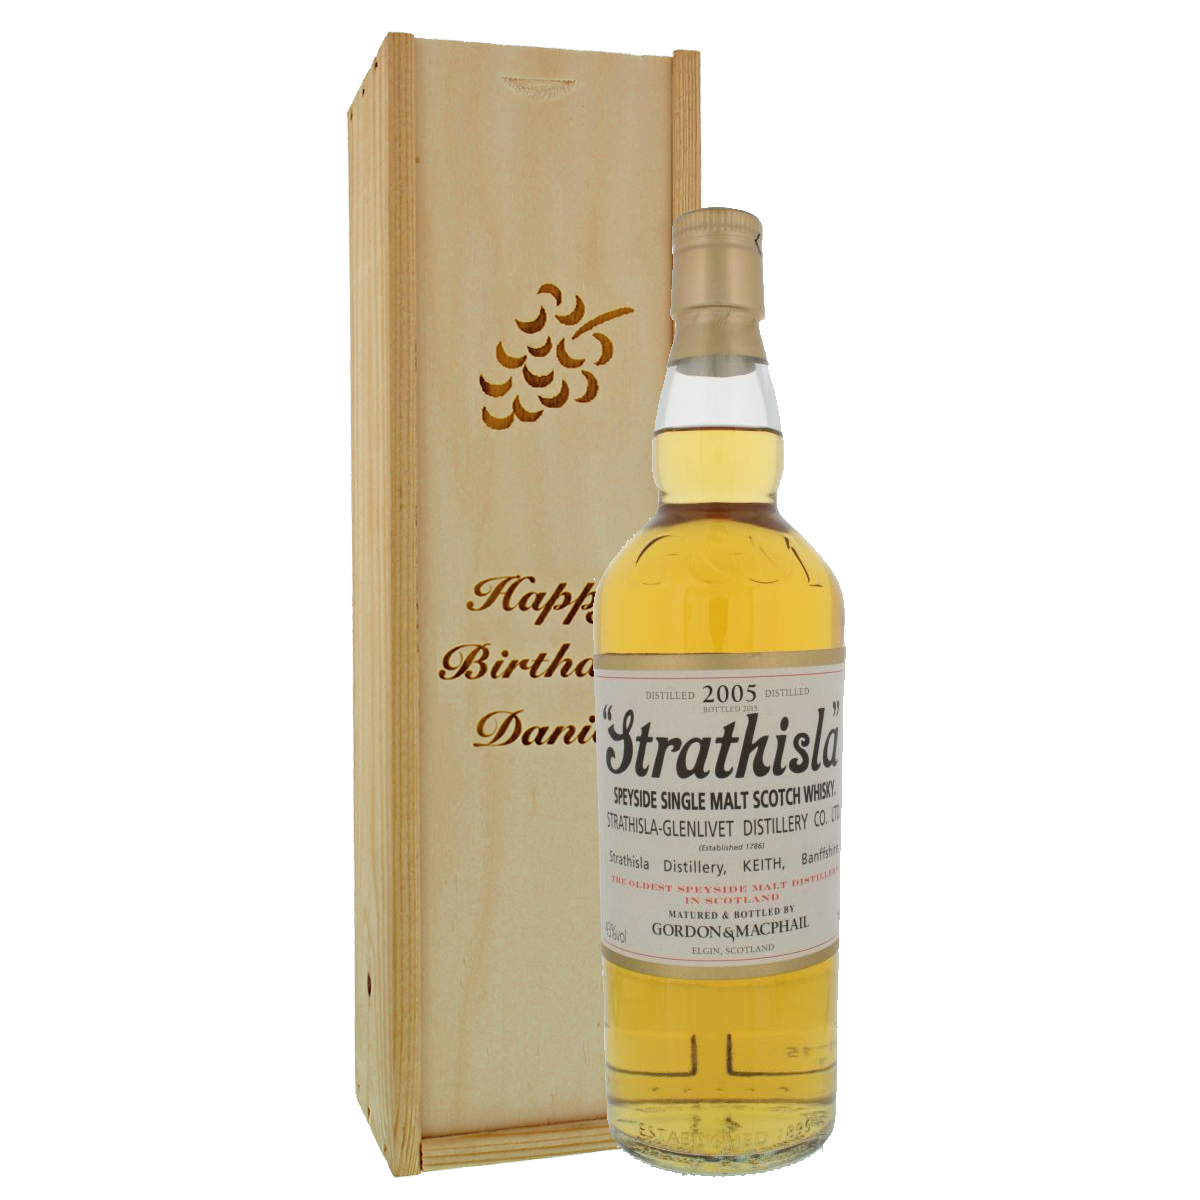 Single Malt Scotch Whisky Strathisla | HISTORIA